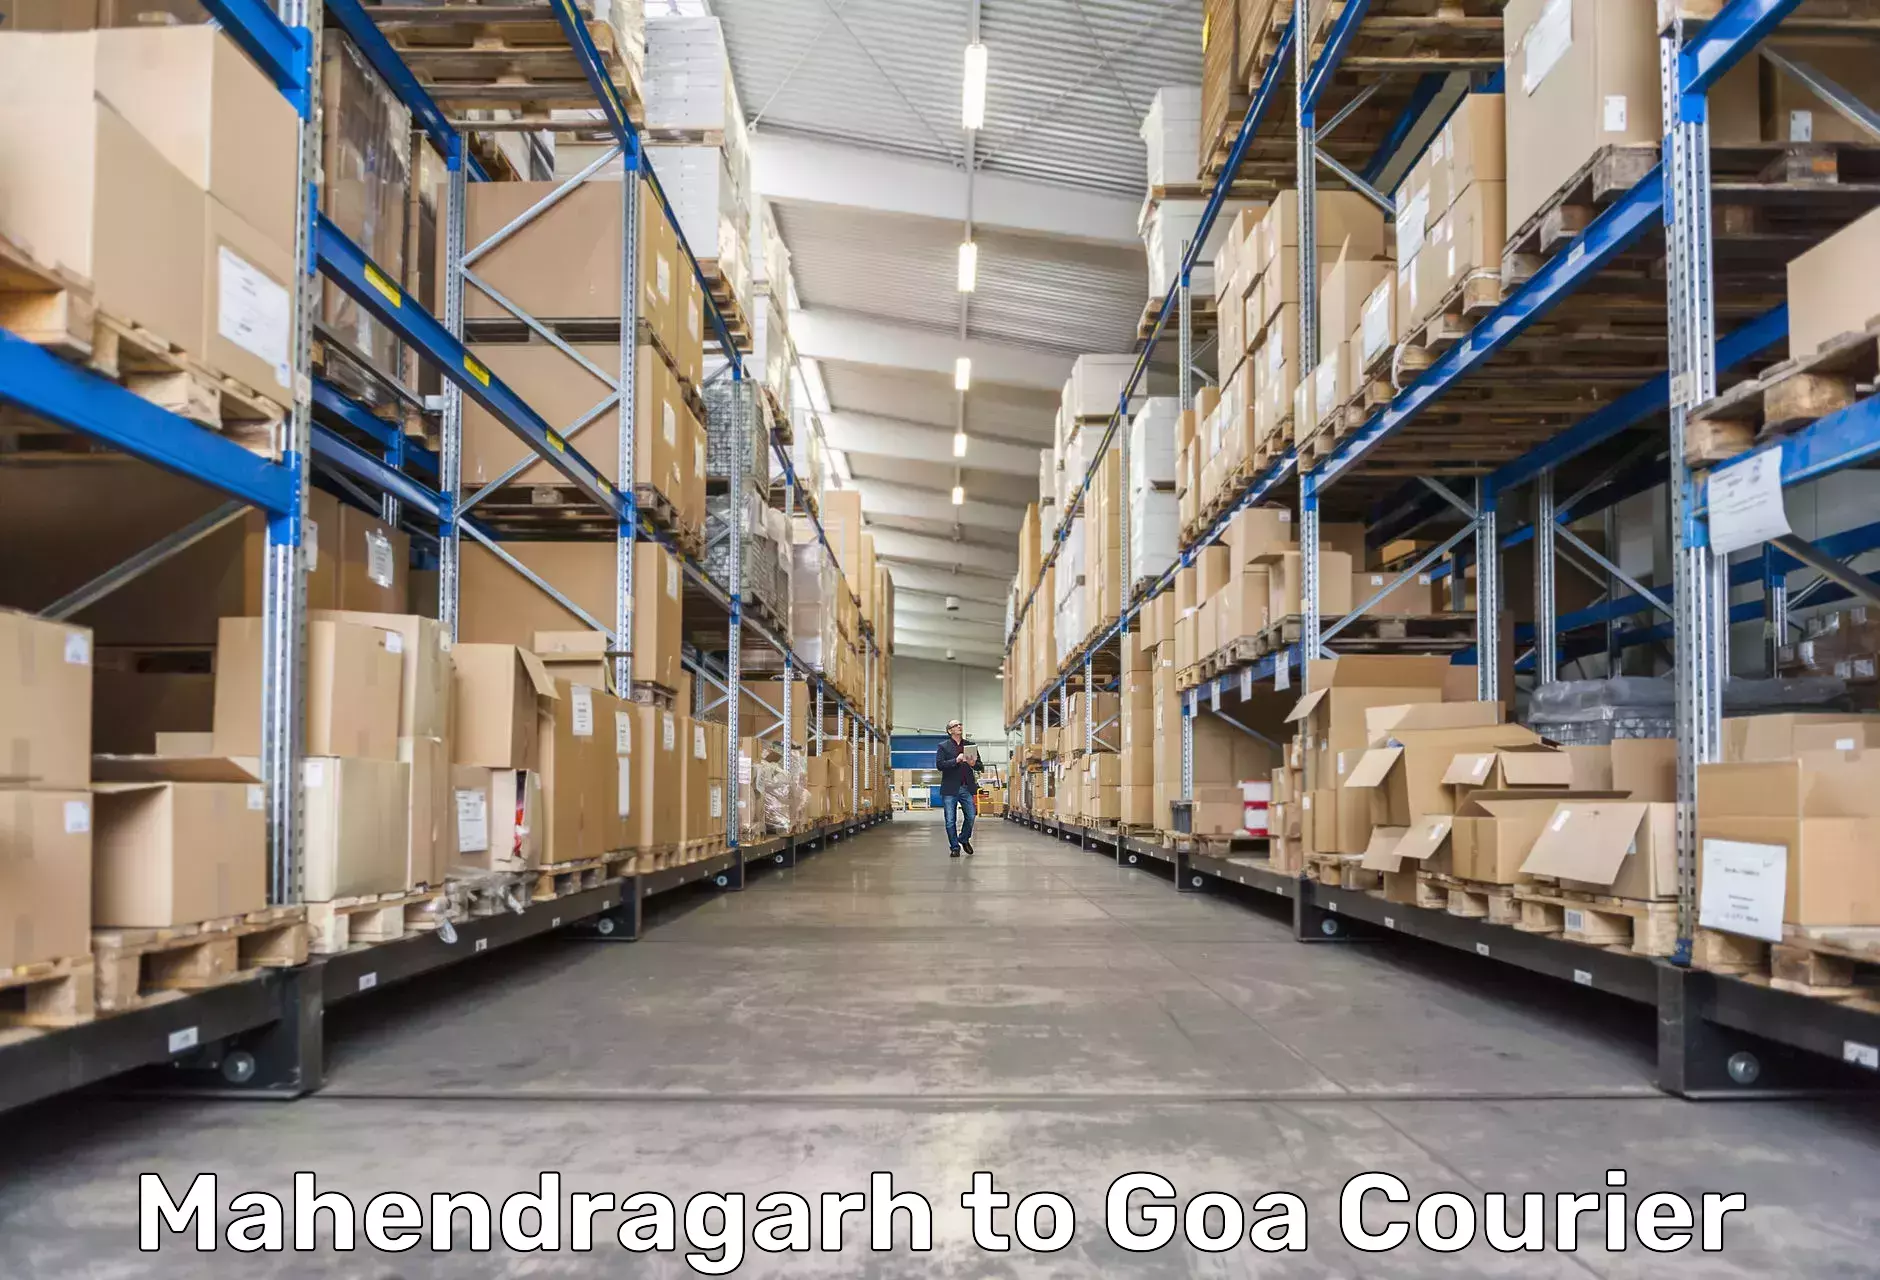 Local delivery service Mahendragarh to Goa